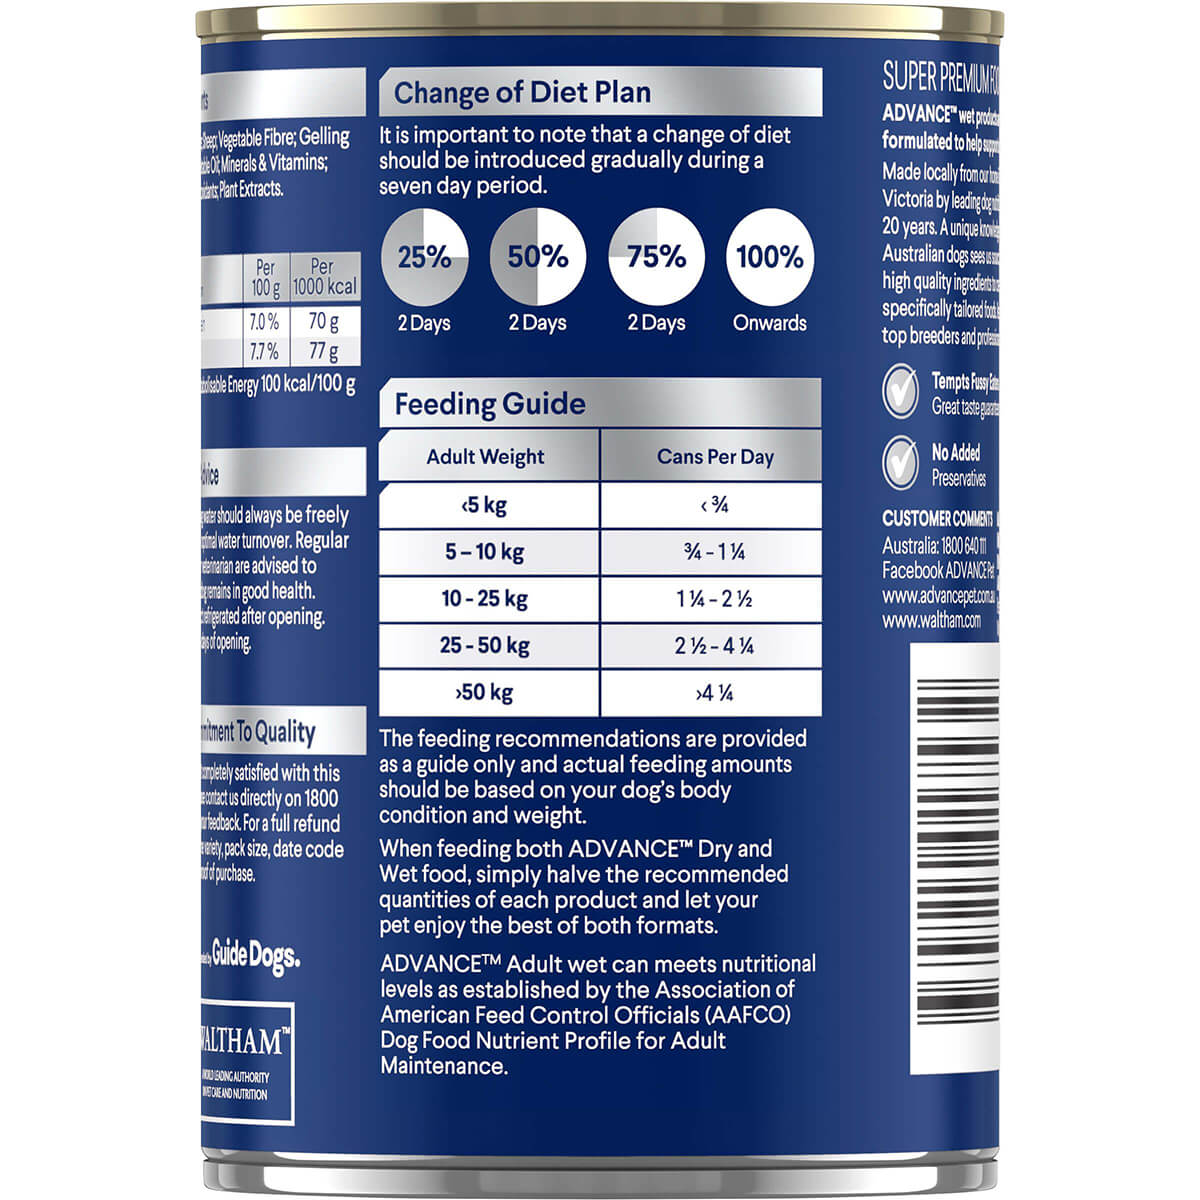 Advance Sensitive Adult Chicken & Rice Wet Dog Food (122711000071) [default_color]